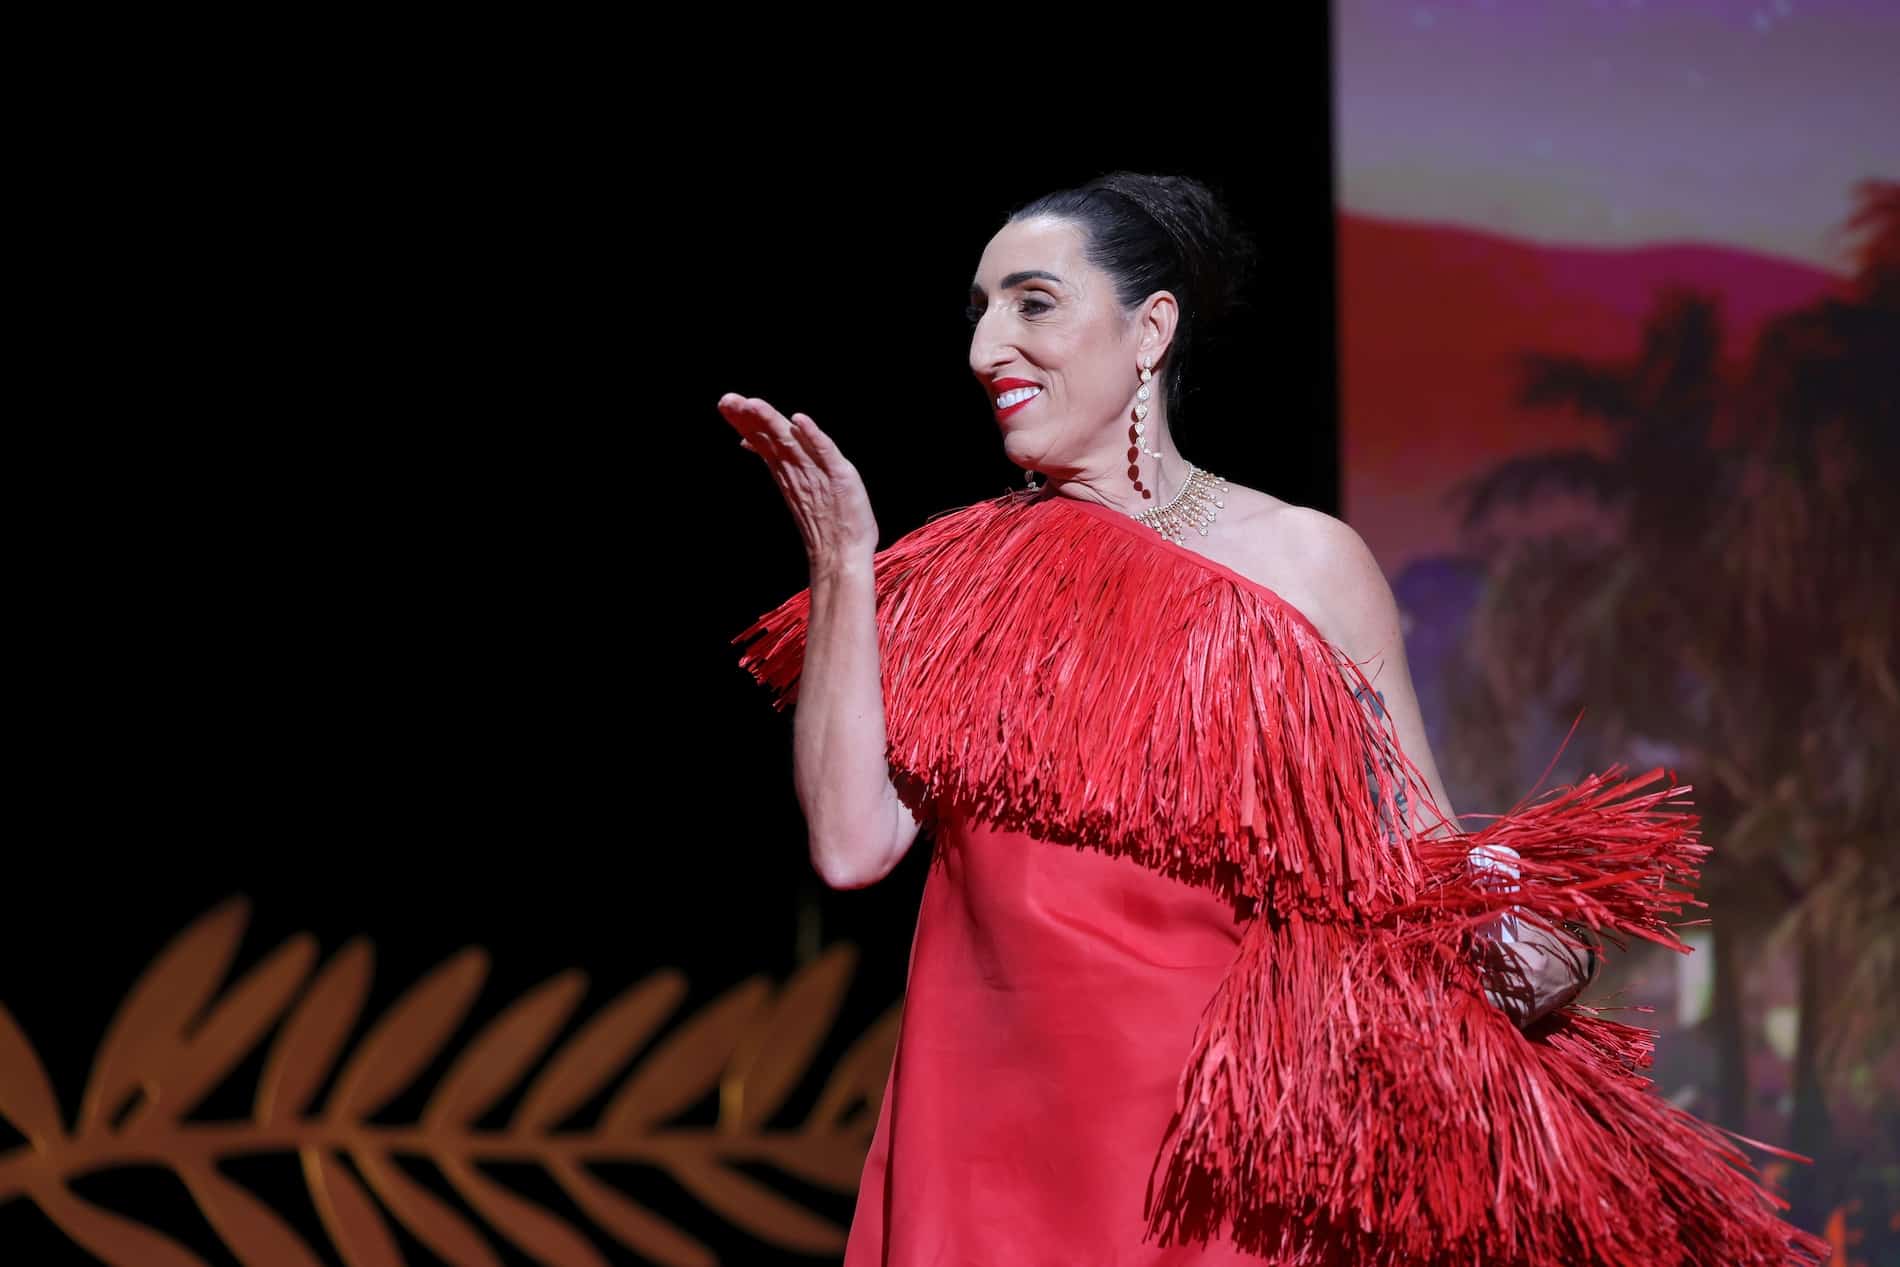 Rossy de Palma, ‘La chica Almodóvar’, estará en Costa Rica como invitada especial en festival en Tamarindo